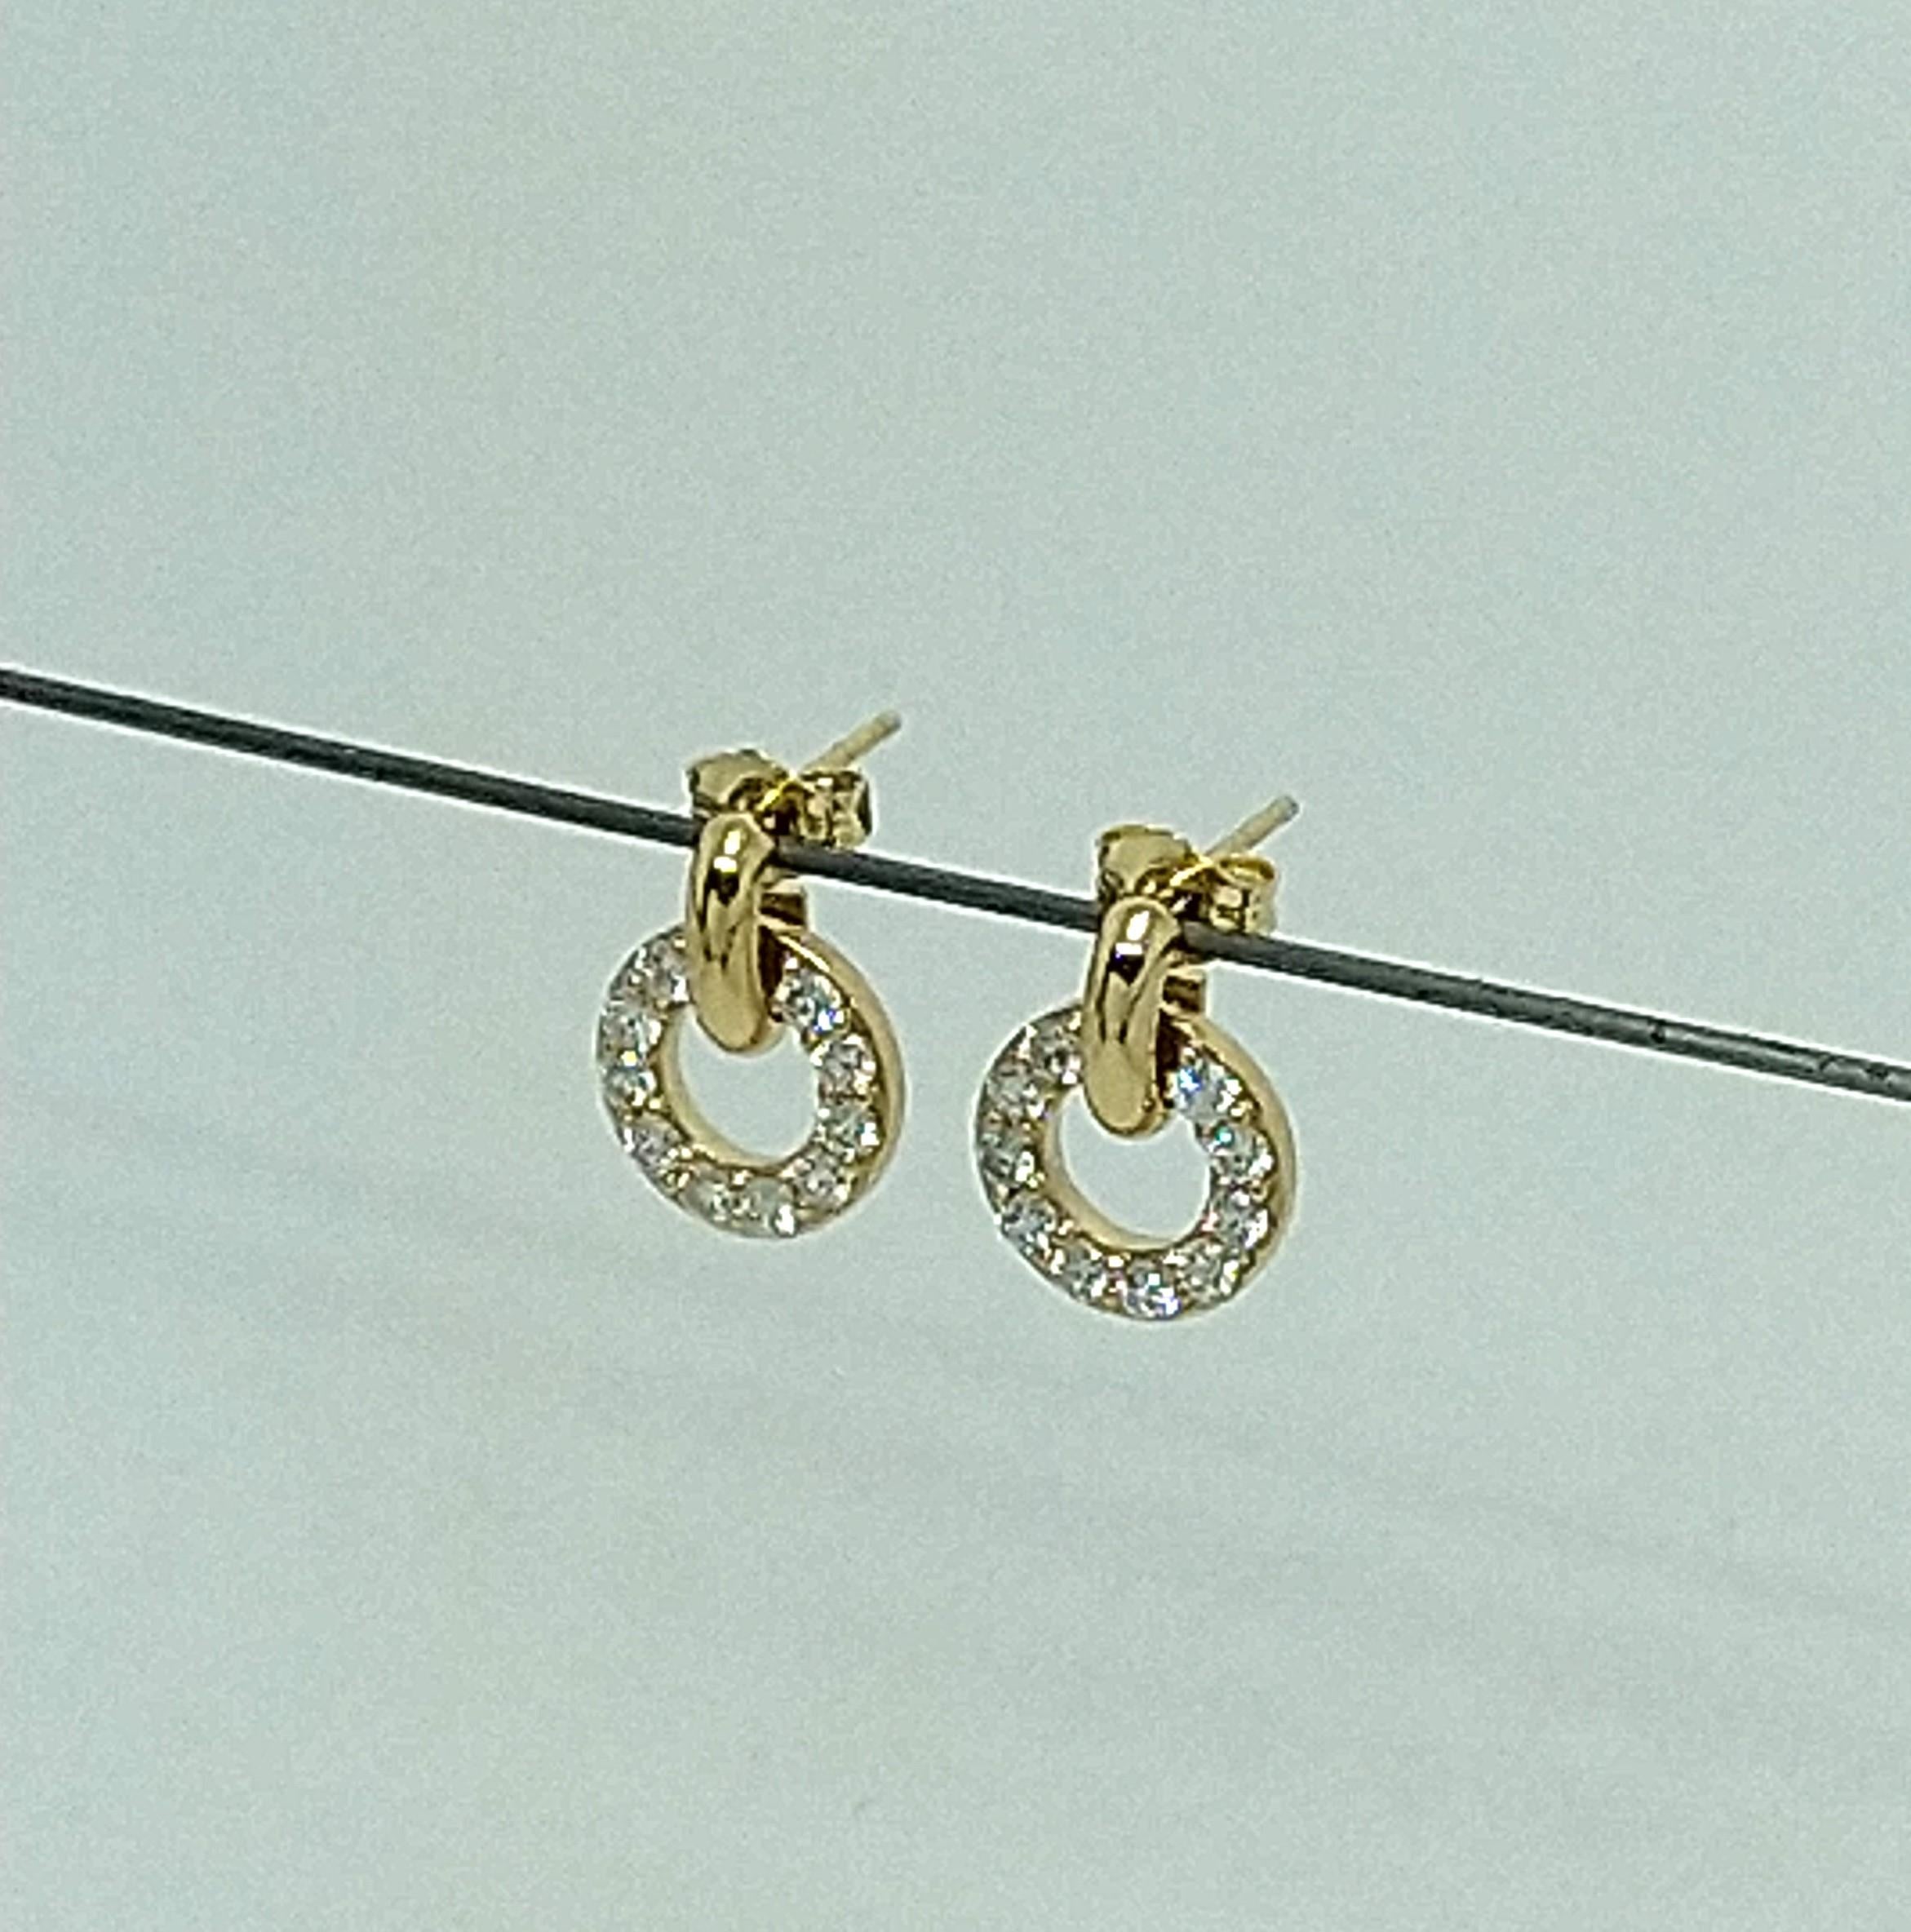 Jaune 18 carats GIA  Diamant  Boucles d'oreilles pendantes, Tiffany Le designer Thomas Kurilla joue la carte de la simplicité et de l'élégance. La boucle d'oreille est  14 mm x 10,5 mm de diamètre. Minuscule mais puissant. L'élégance tout au long de